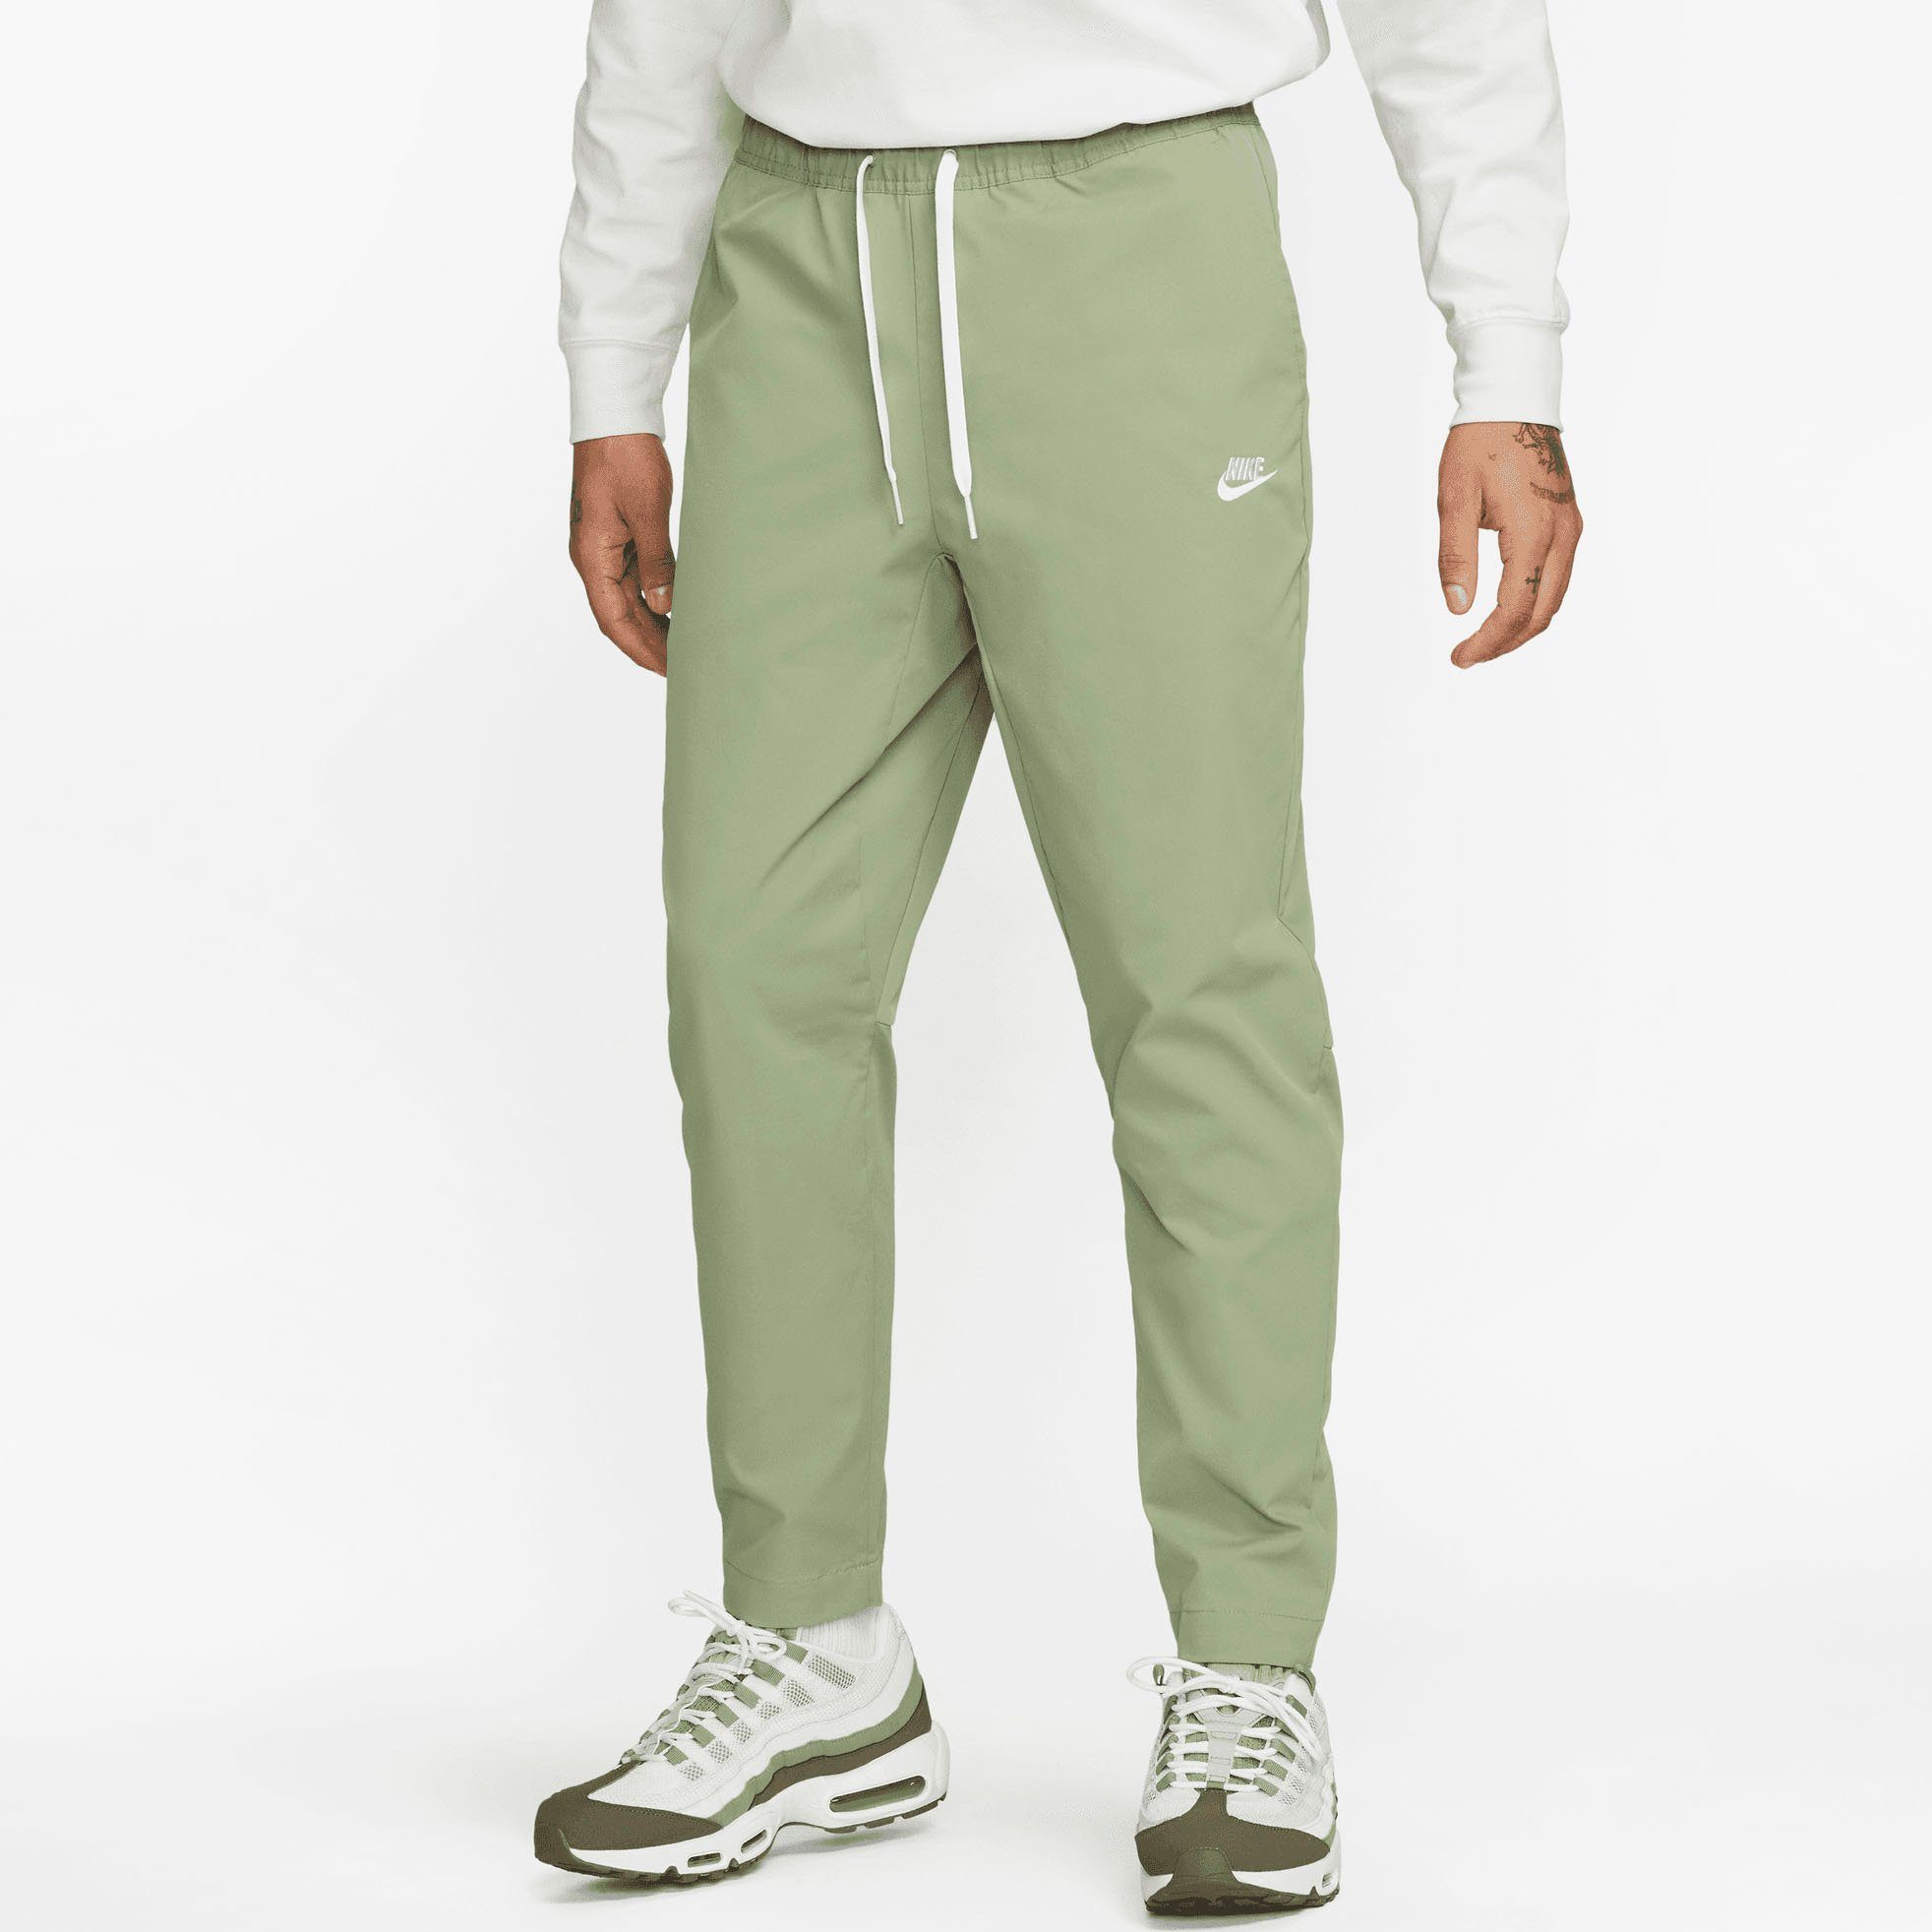 Grüne Nike Herren Jogginghosen online kaufen | OTTO